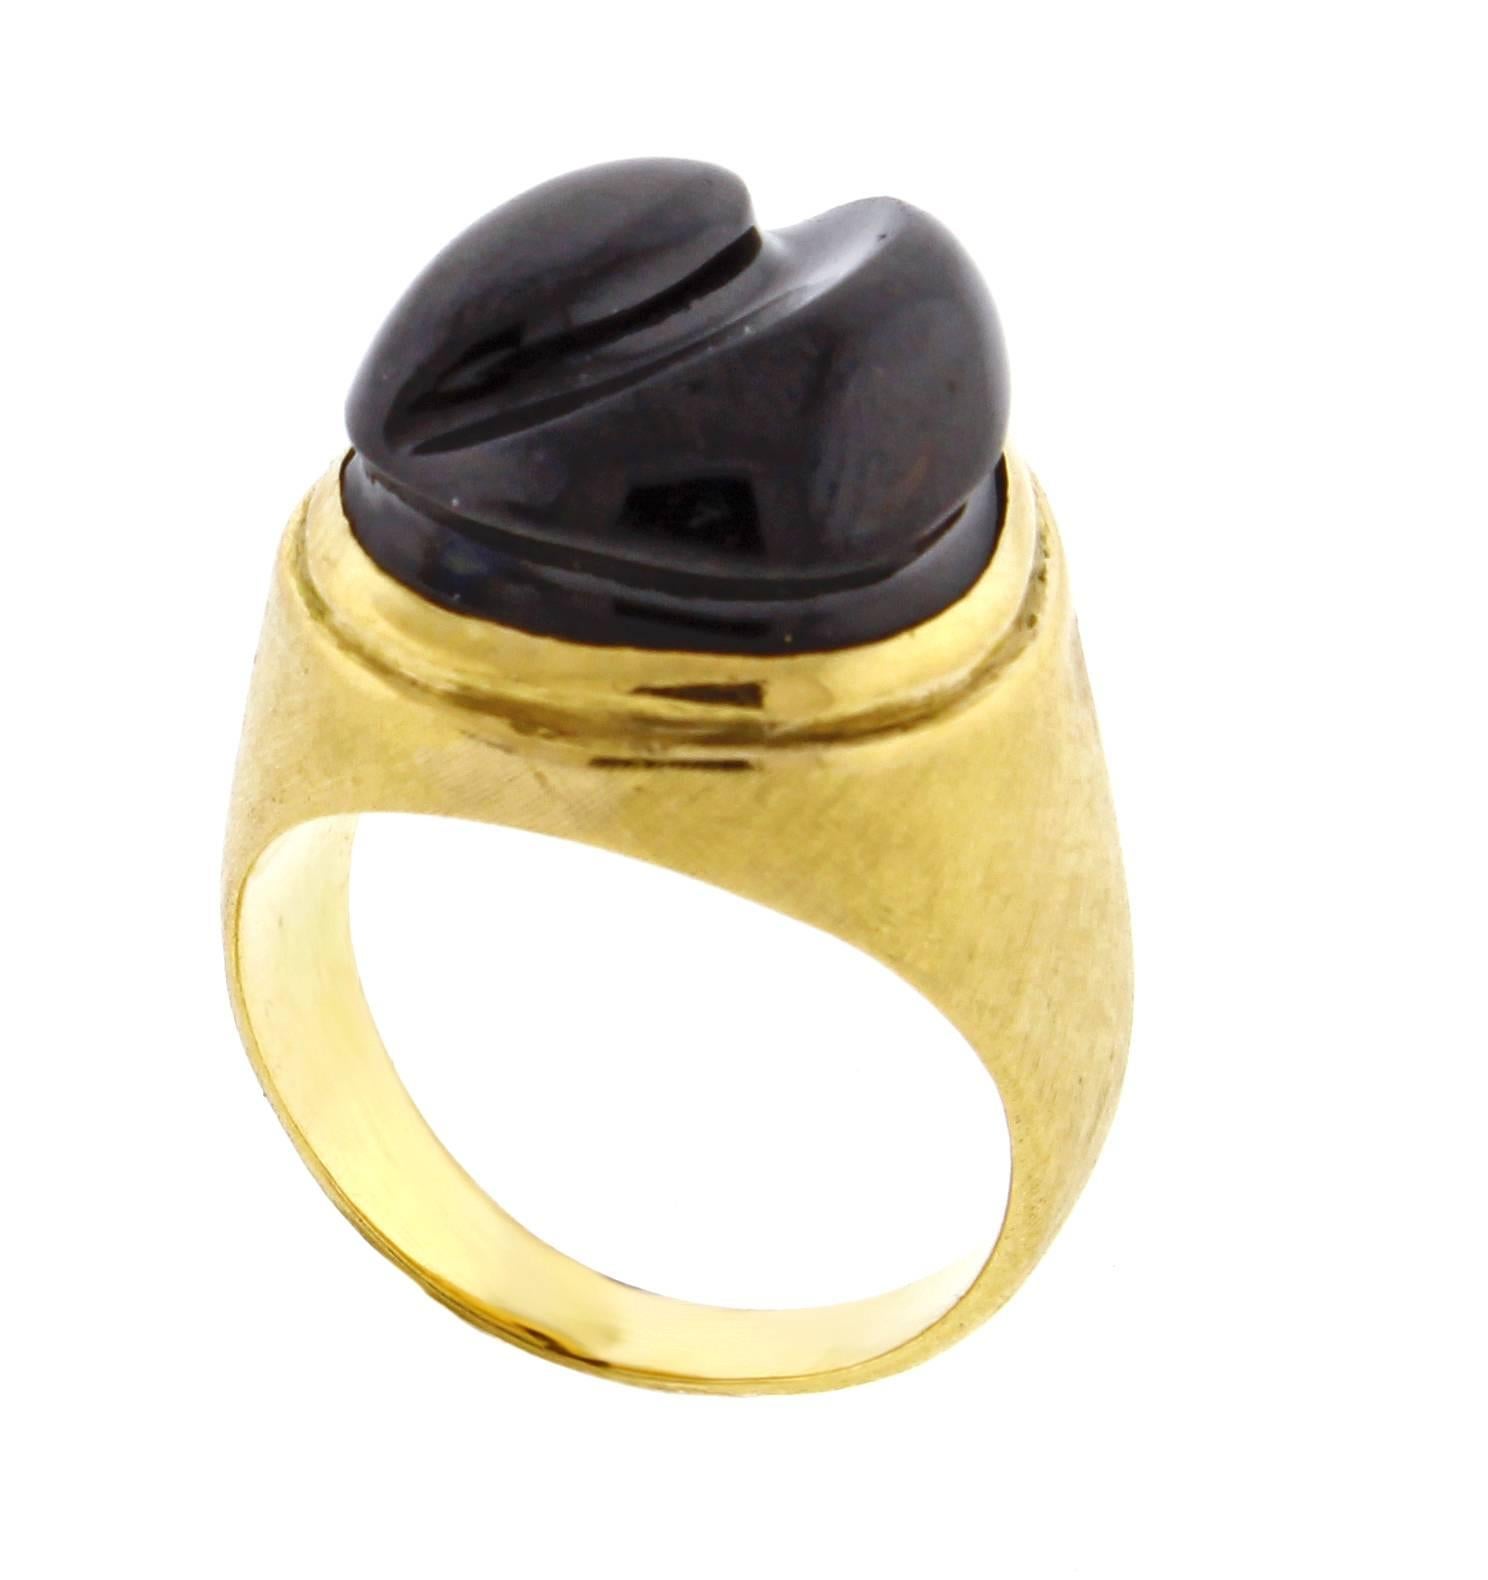 Modernist Burle Marx Forma Livre Black Tourmaline Carved Ring